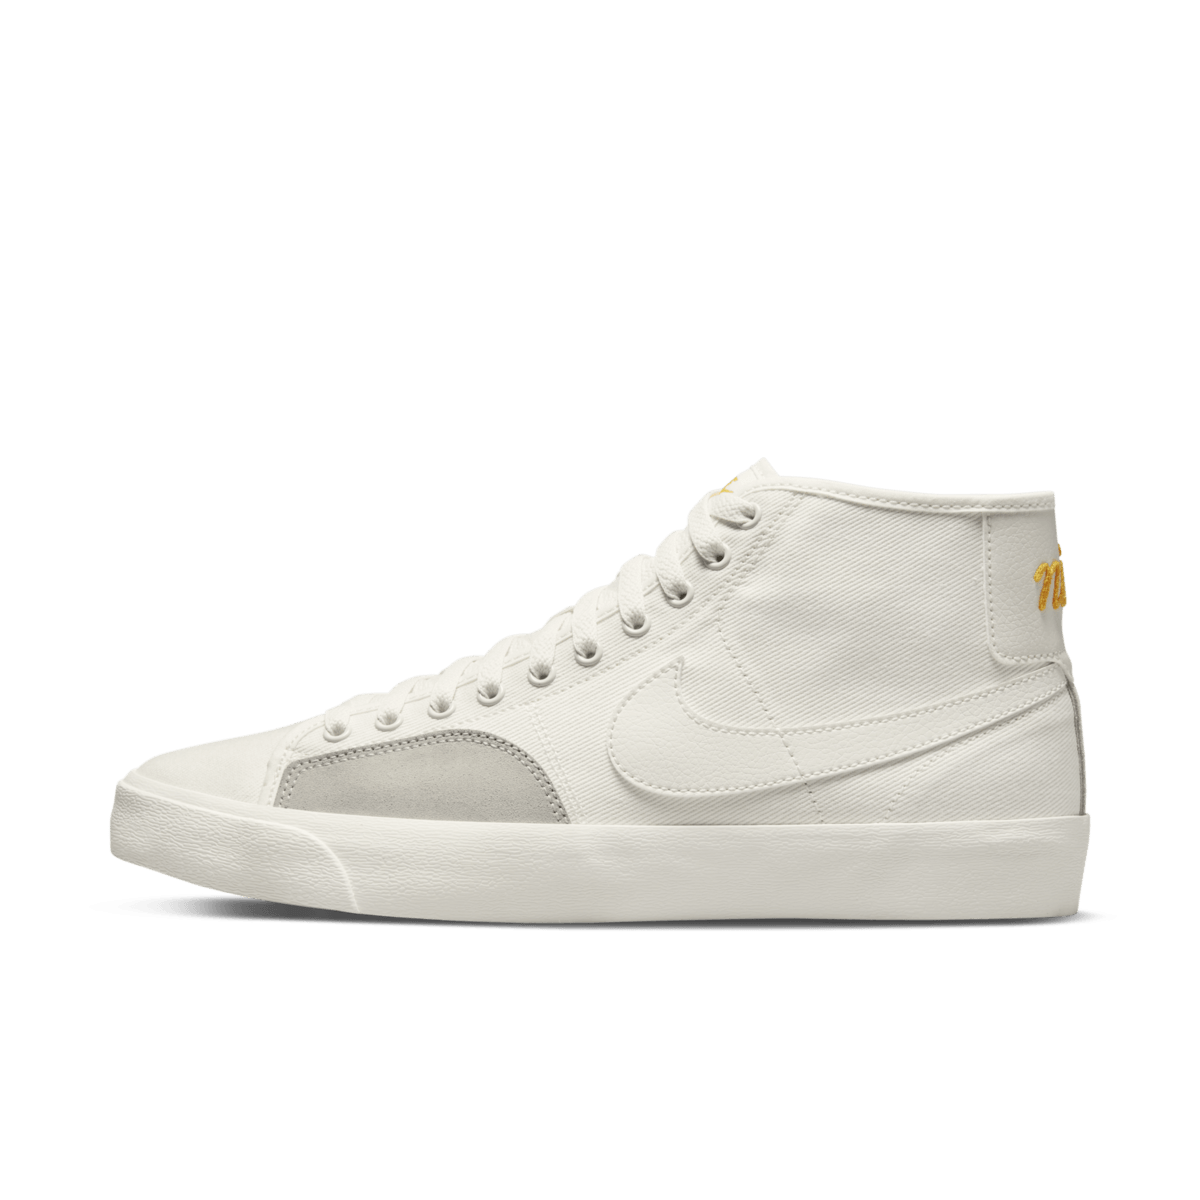 Nike SB Blazer Court Mid PRM 'White' DH7479-100